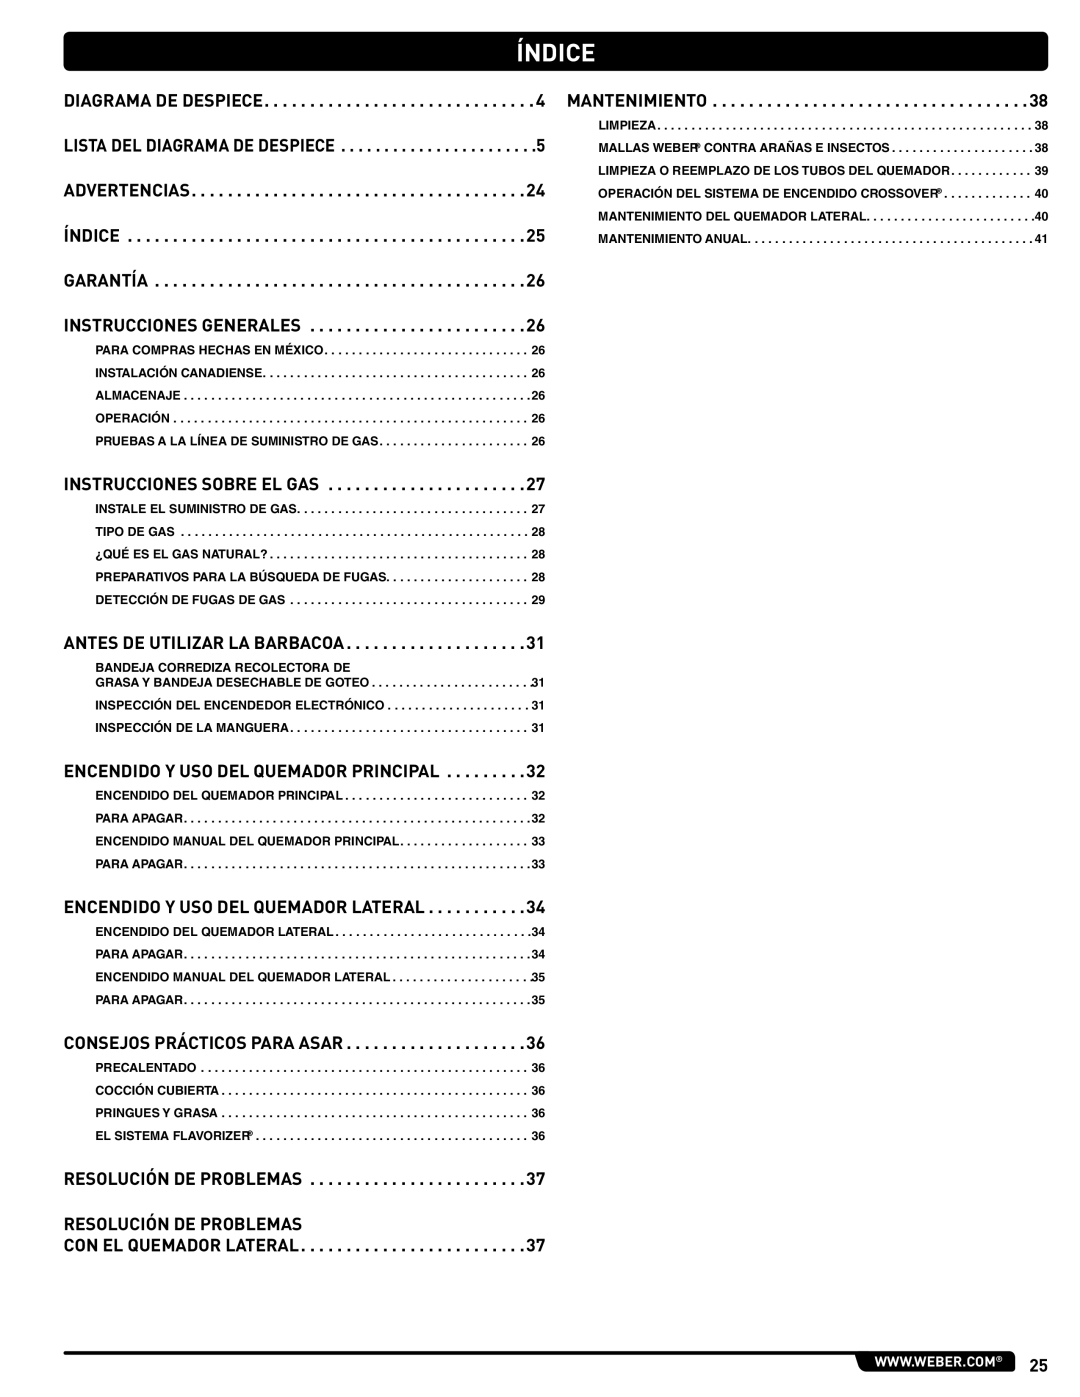 Weber 89963 manual Índice, Instrucciones Sobre EL GAS 